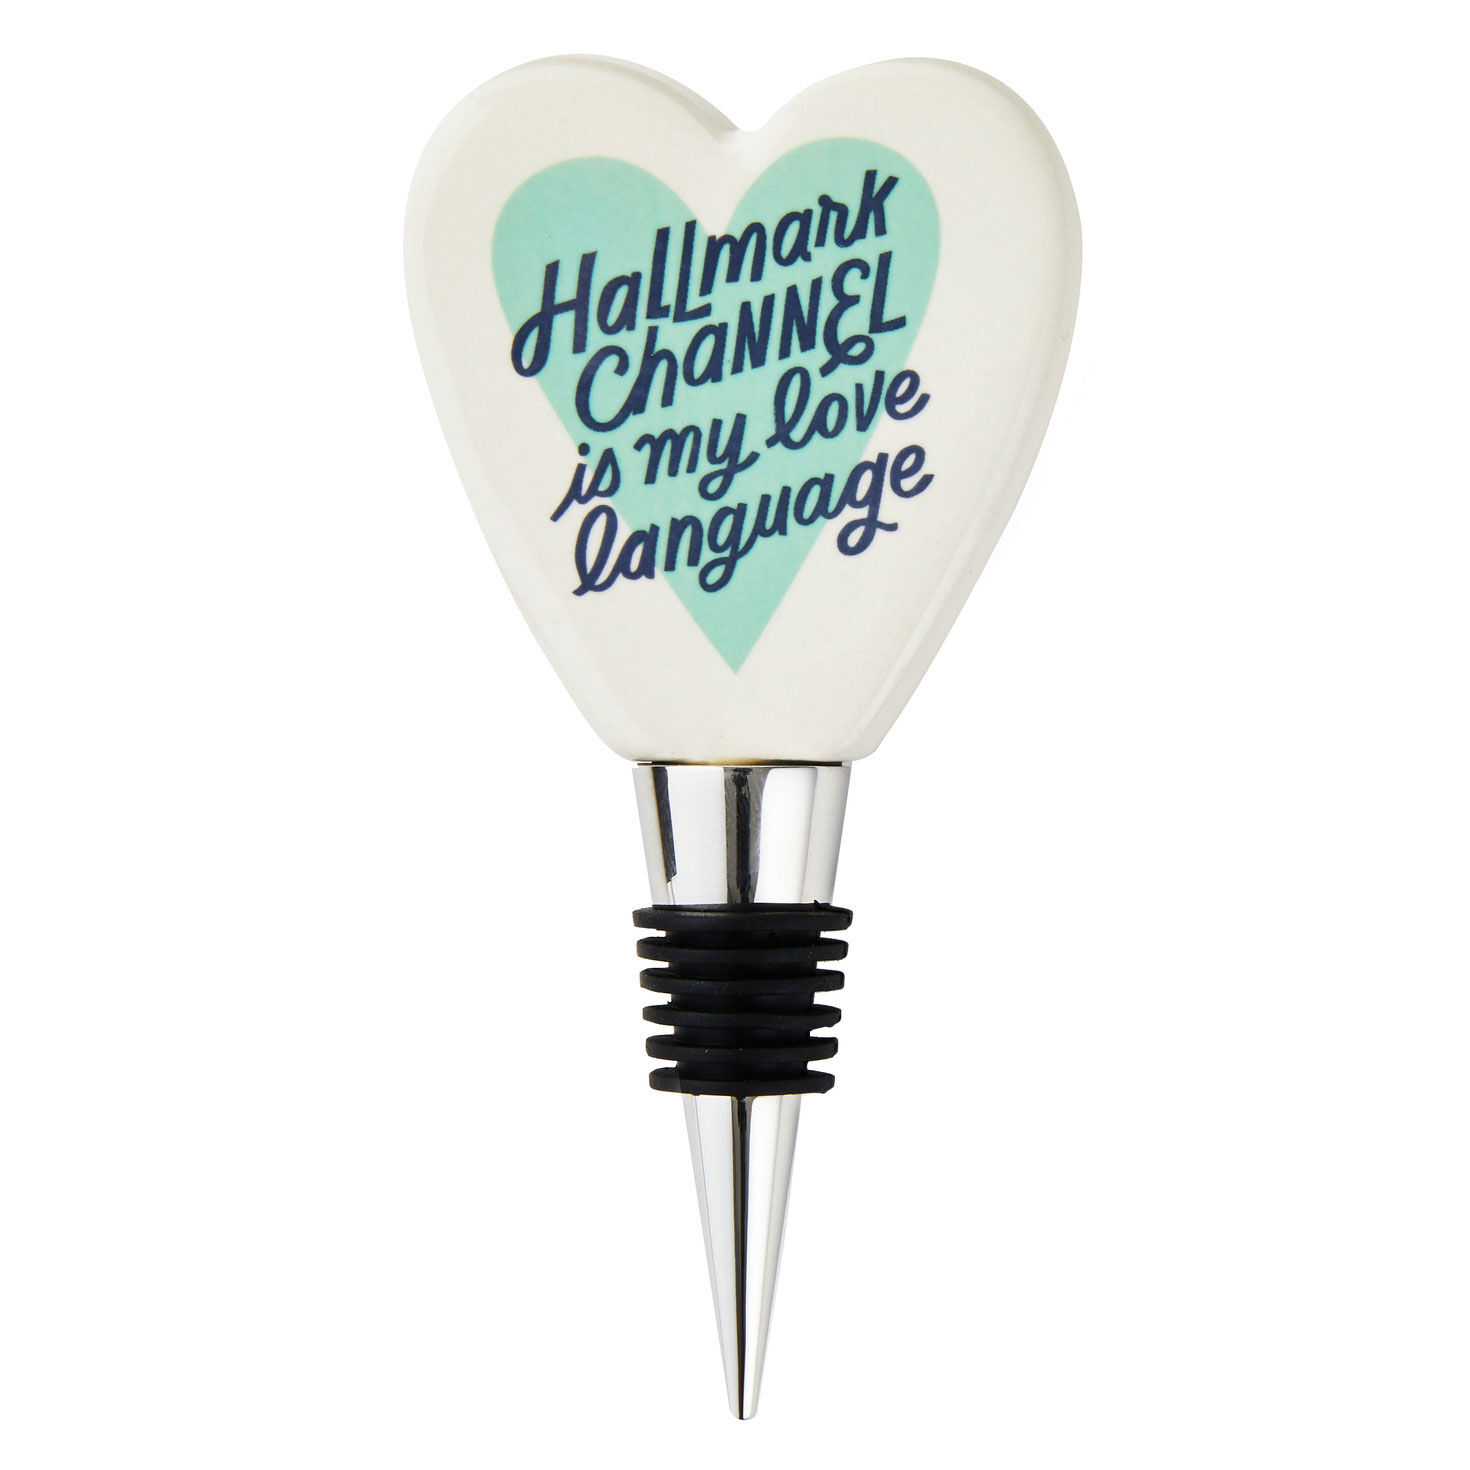 Hallmark Channel Love Language Wine Bottle Stopper for only USD 14.99 | Hallmark